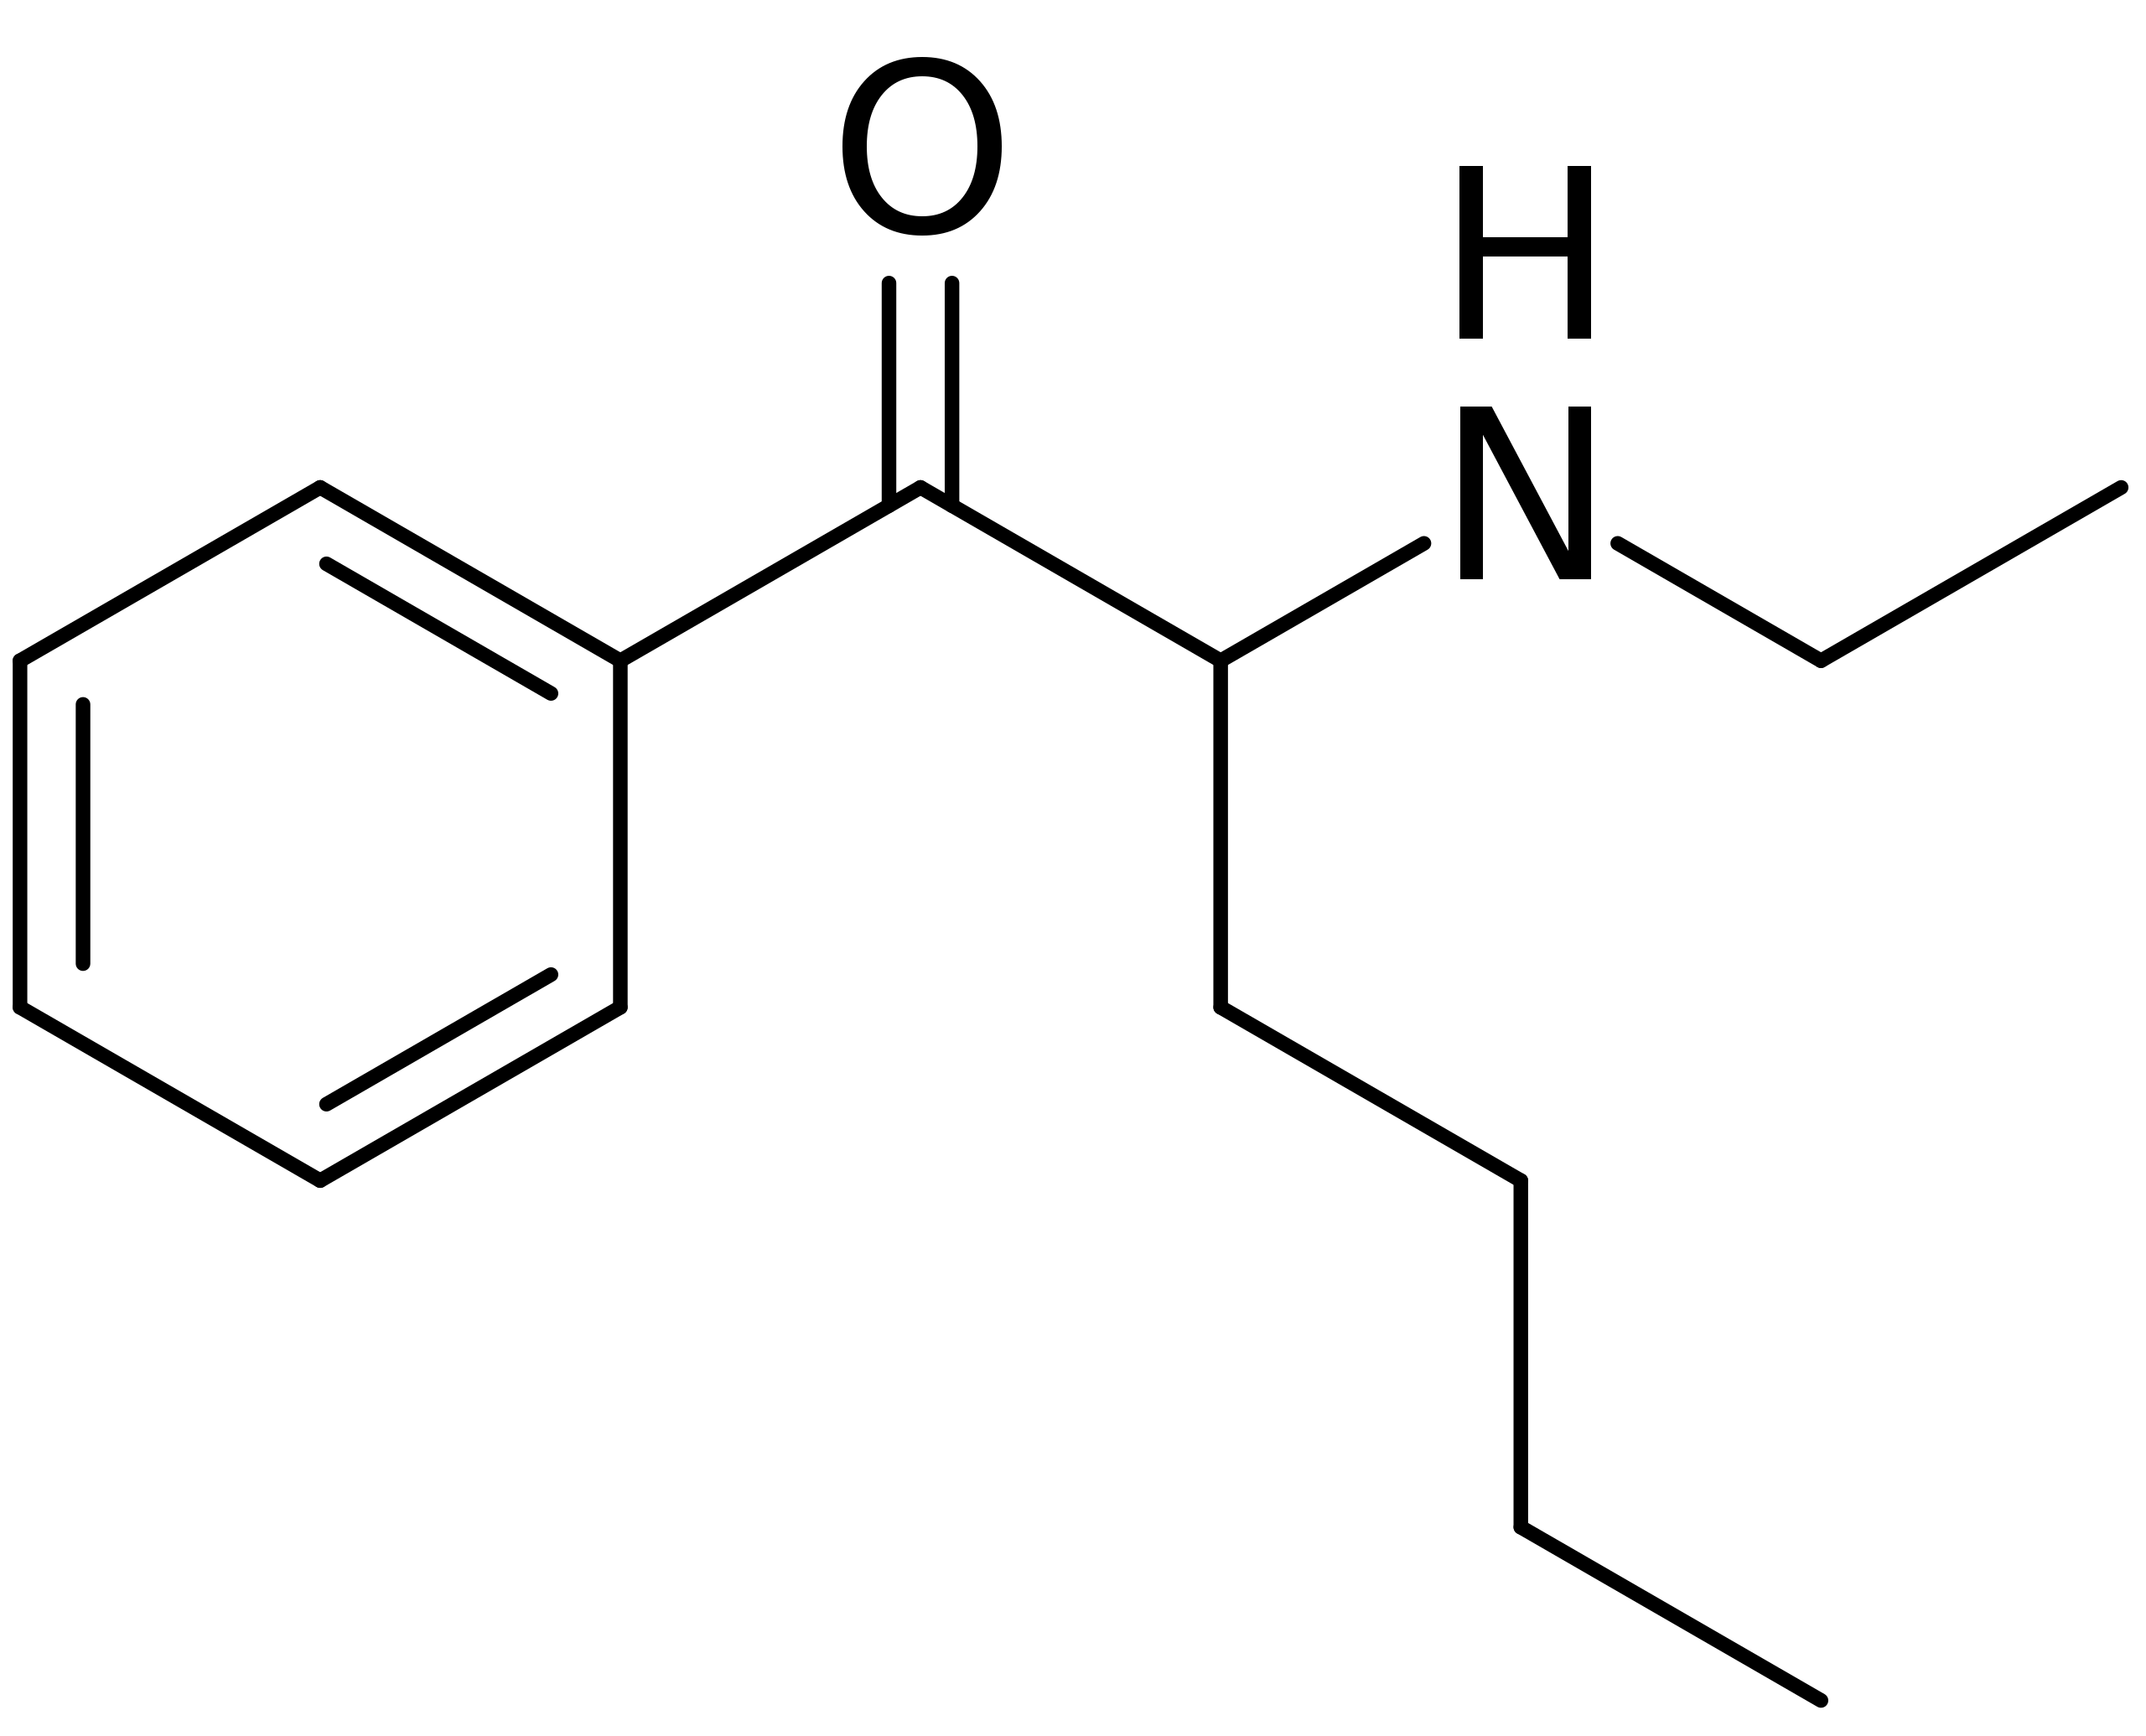 N-Ethylhexedrone